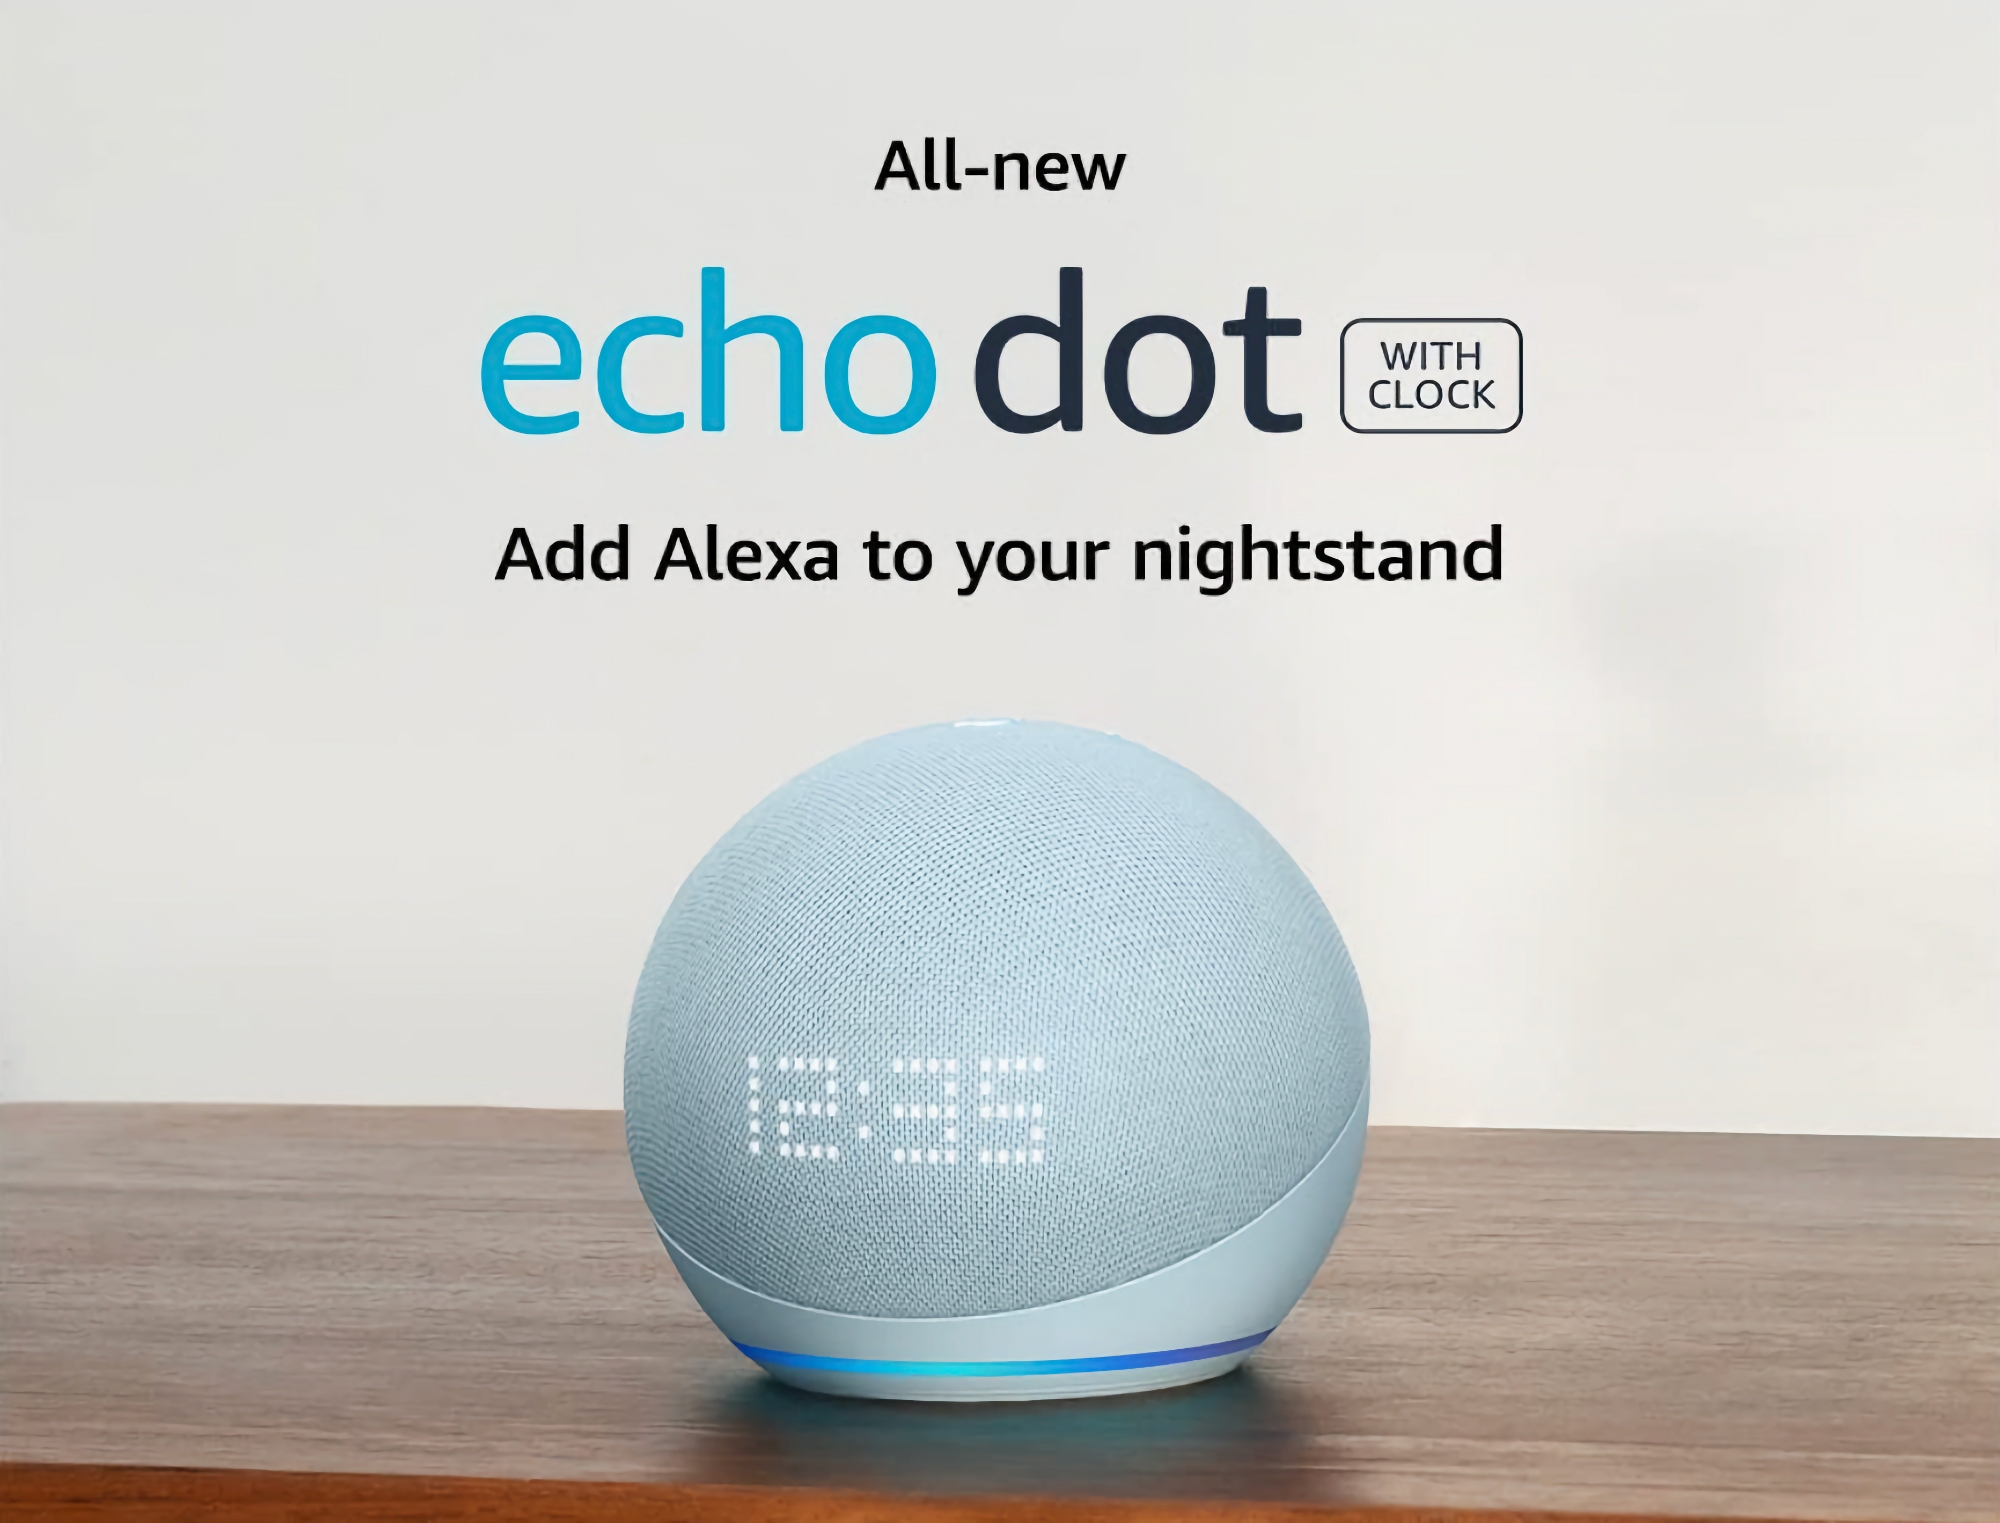 Amazon vende el altavoz inteligente Echo Dot de 5ª generación con sensor de movimiento, reloj integrado y compatibilidad con Alexa por 39 € (20 € de descuento)